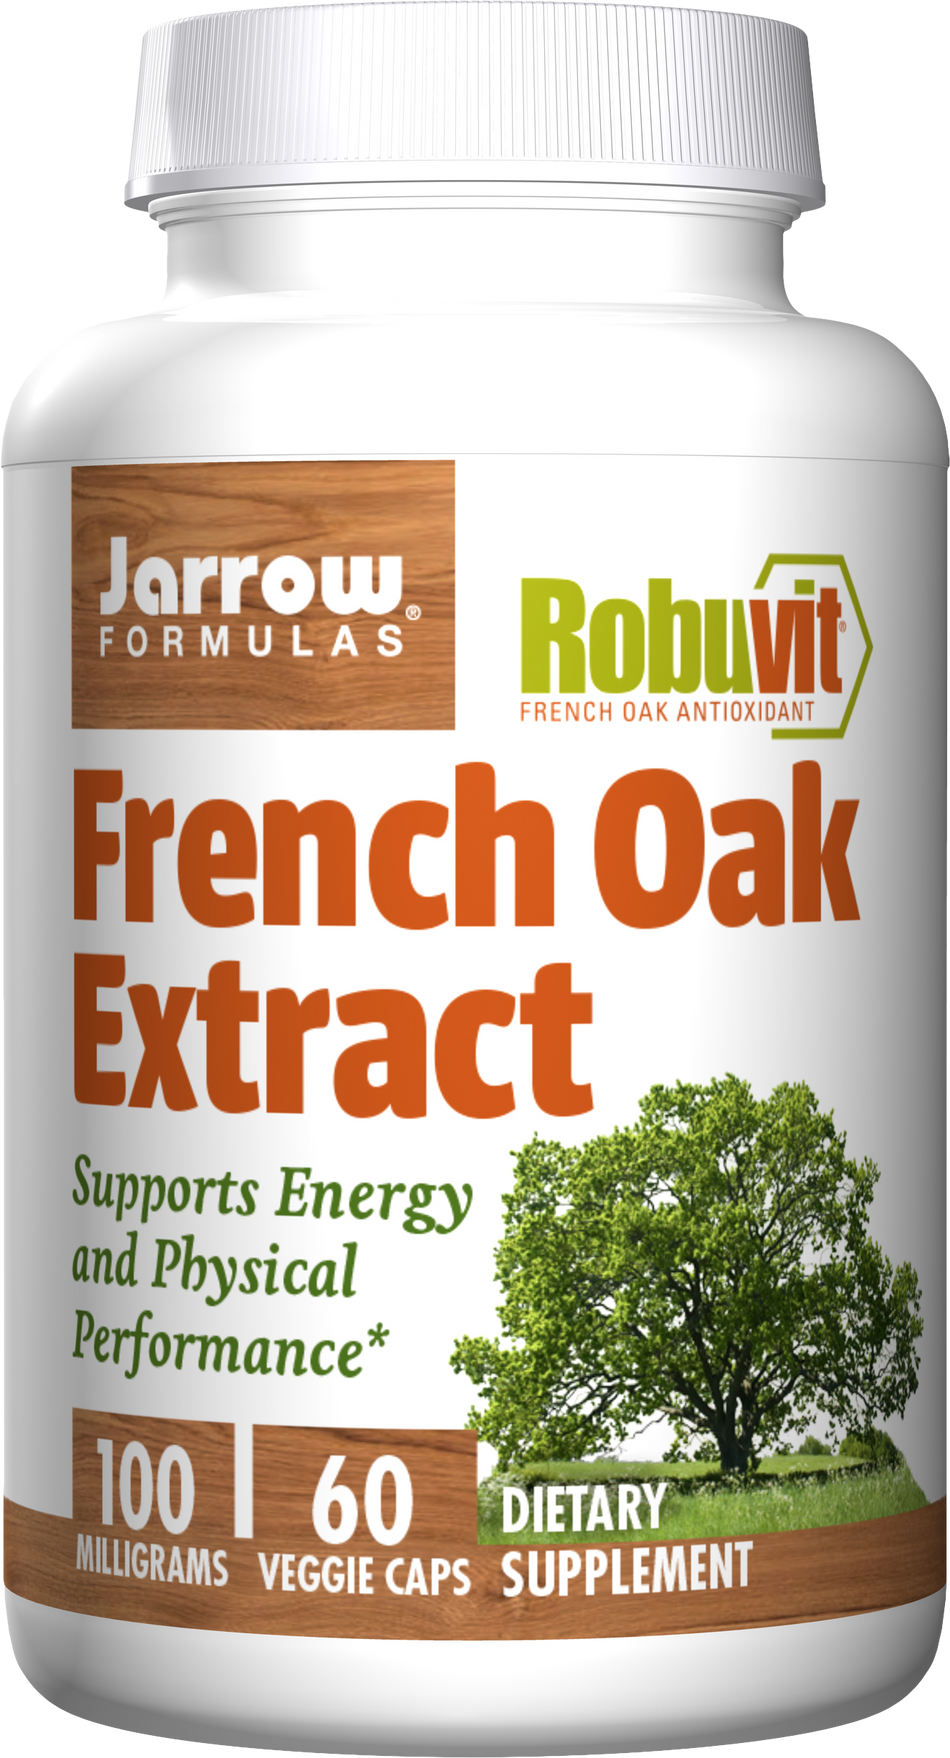 French Oak Extract - BadiZdrav.BG